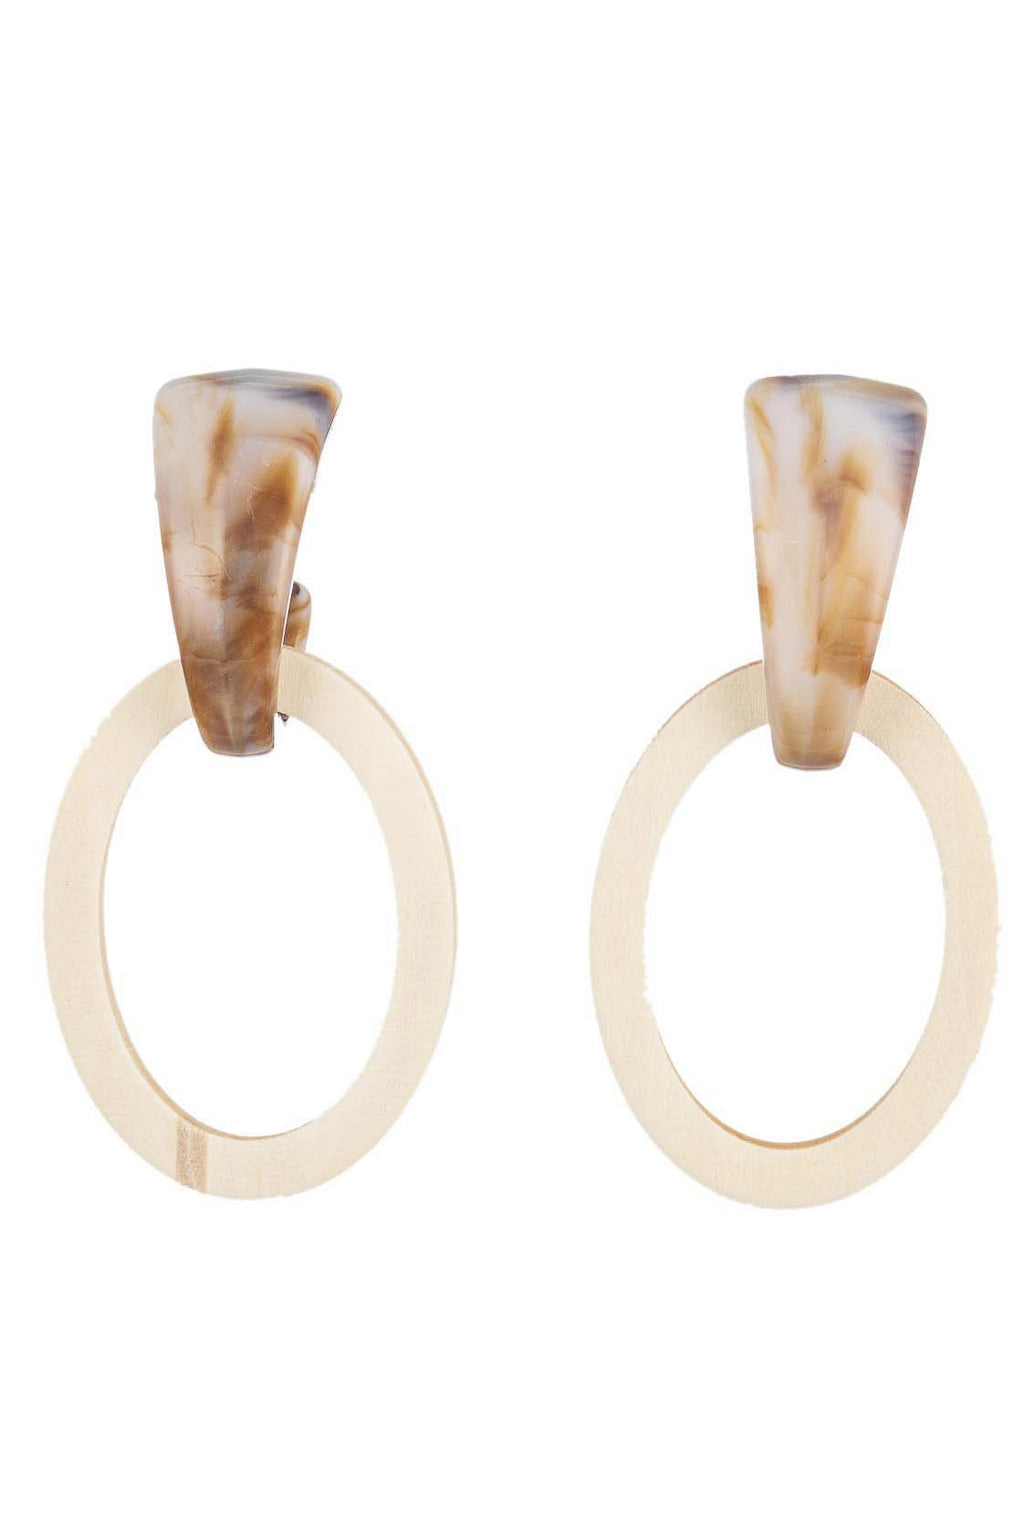 Beige Wood Design oval Earring